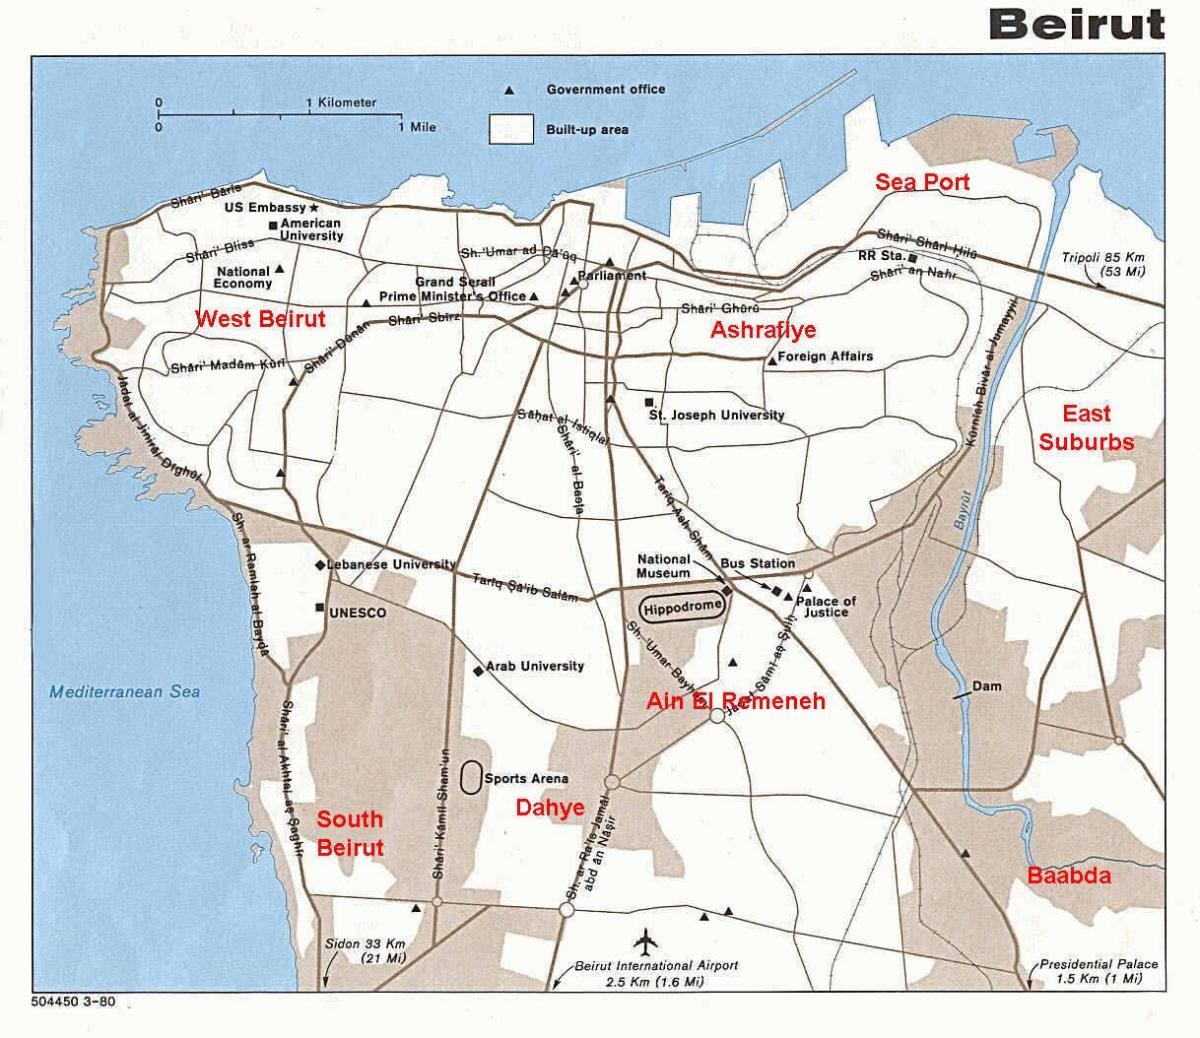 کا نقشہ بیروت لبنان